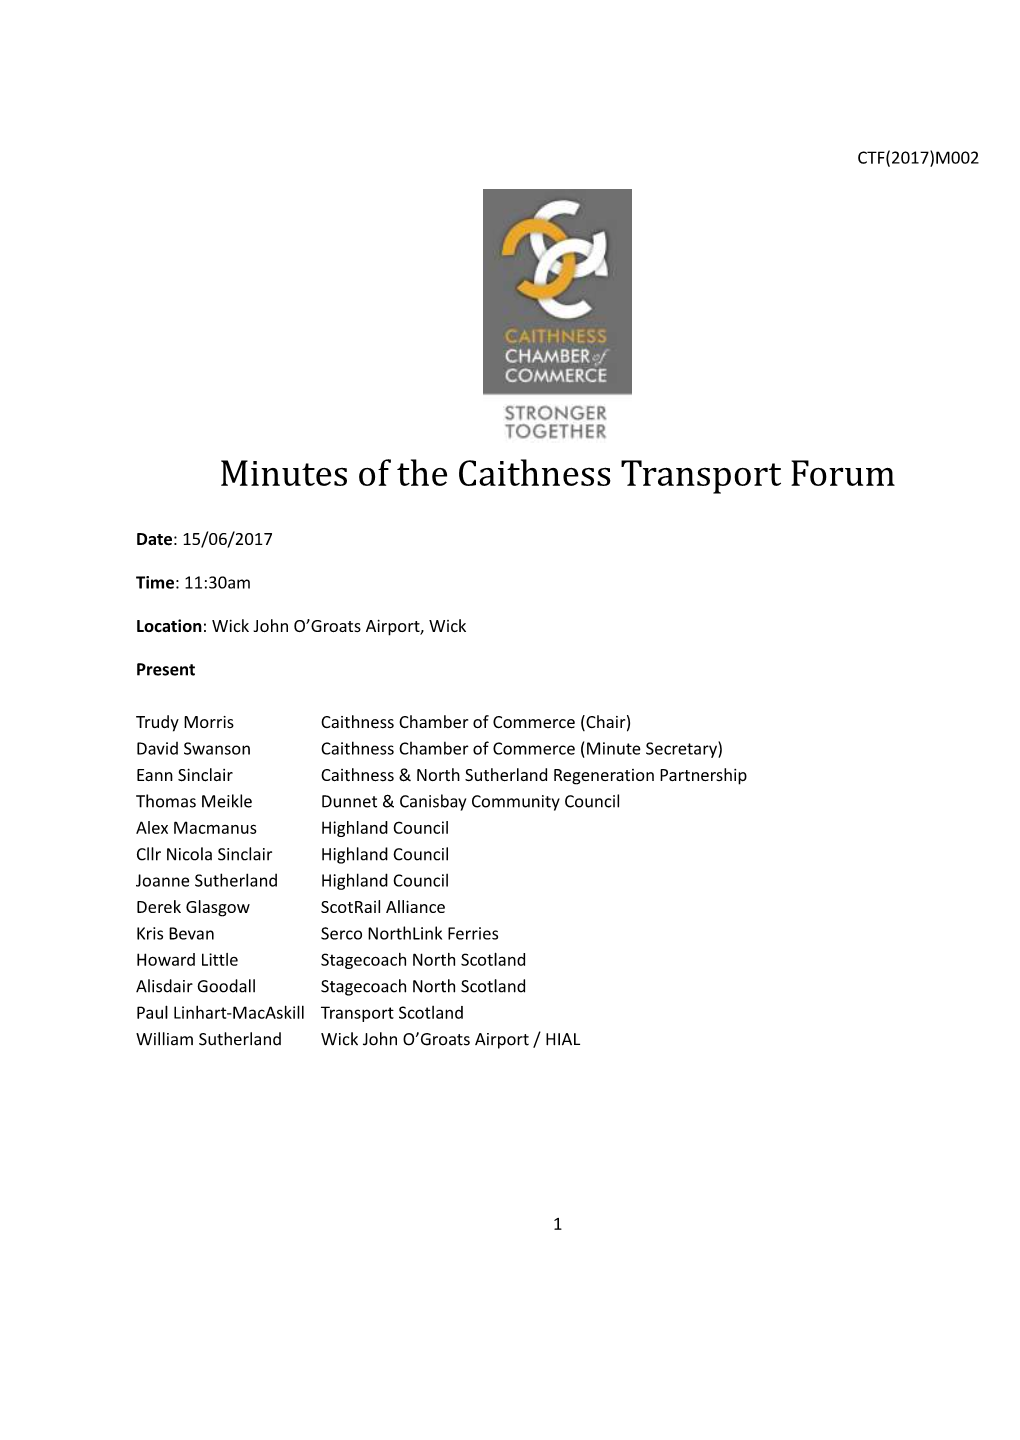 Caithness Transport Forum